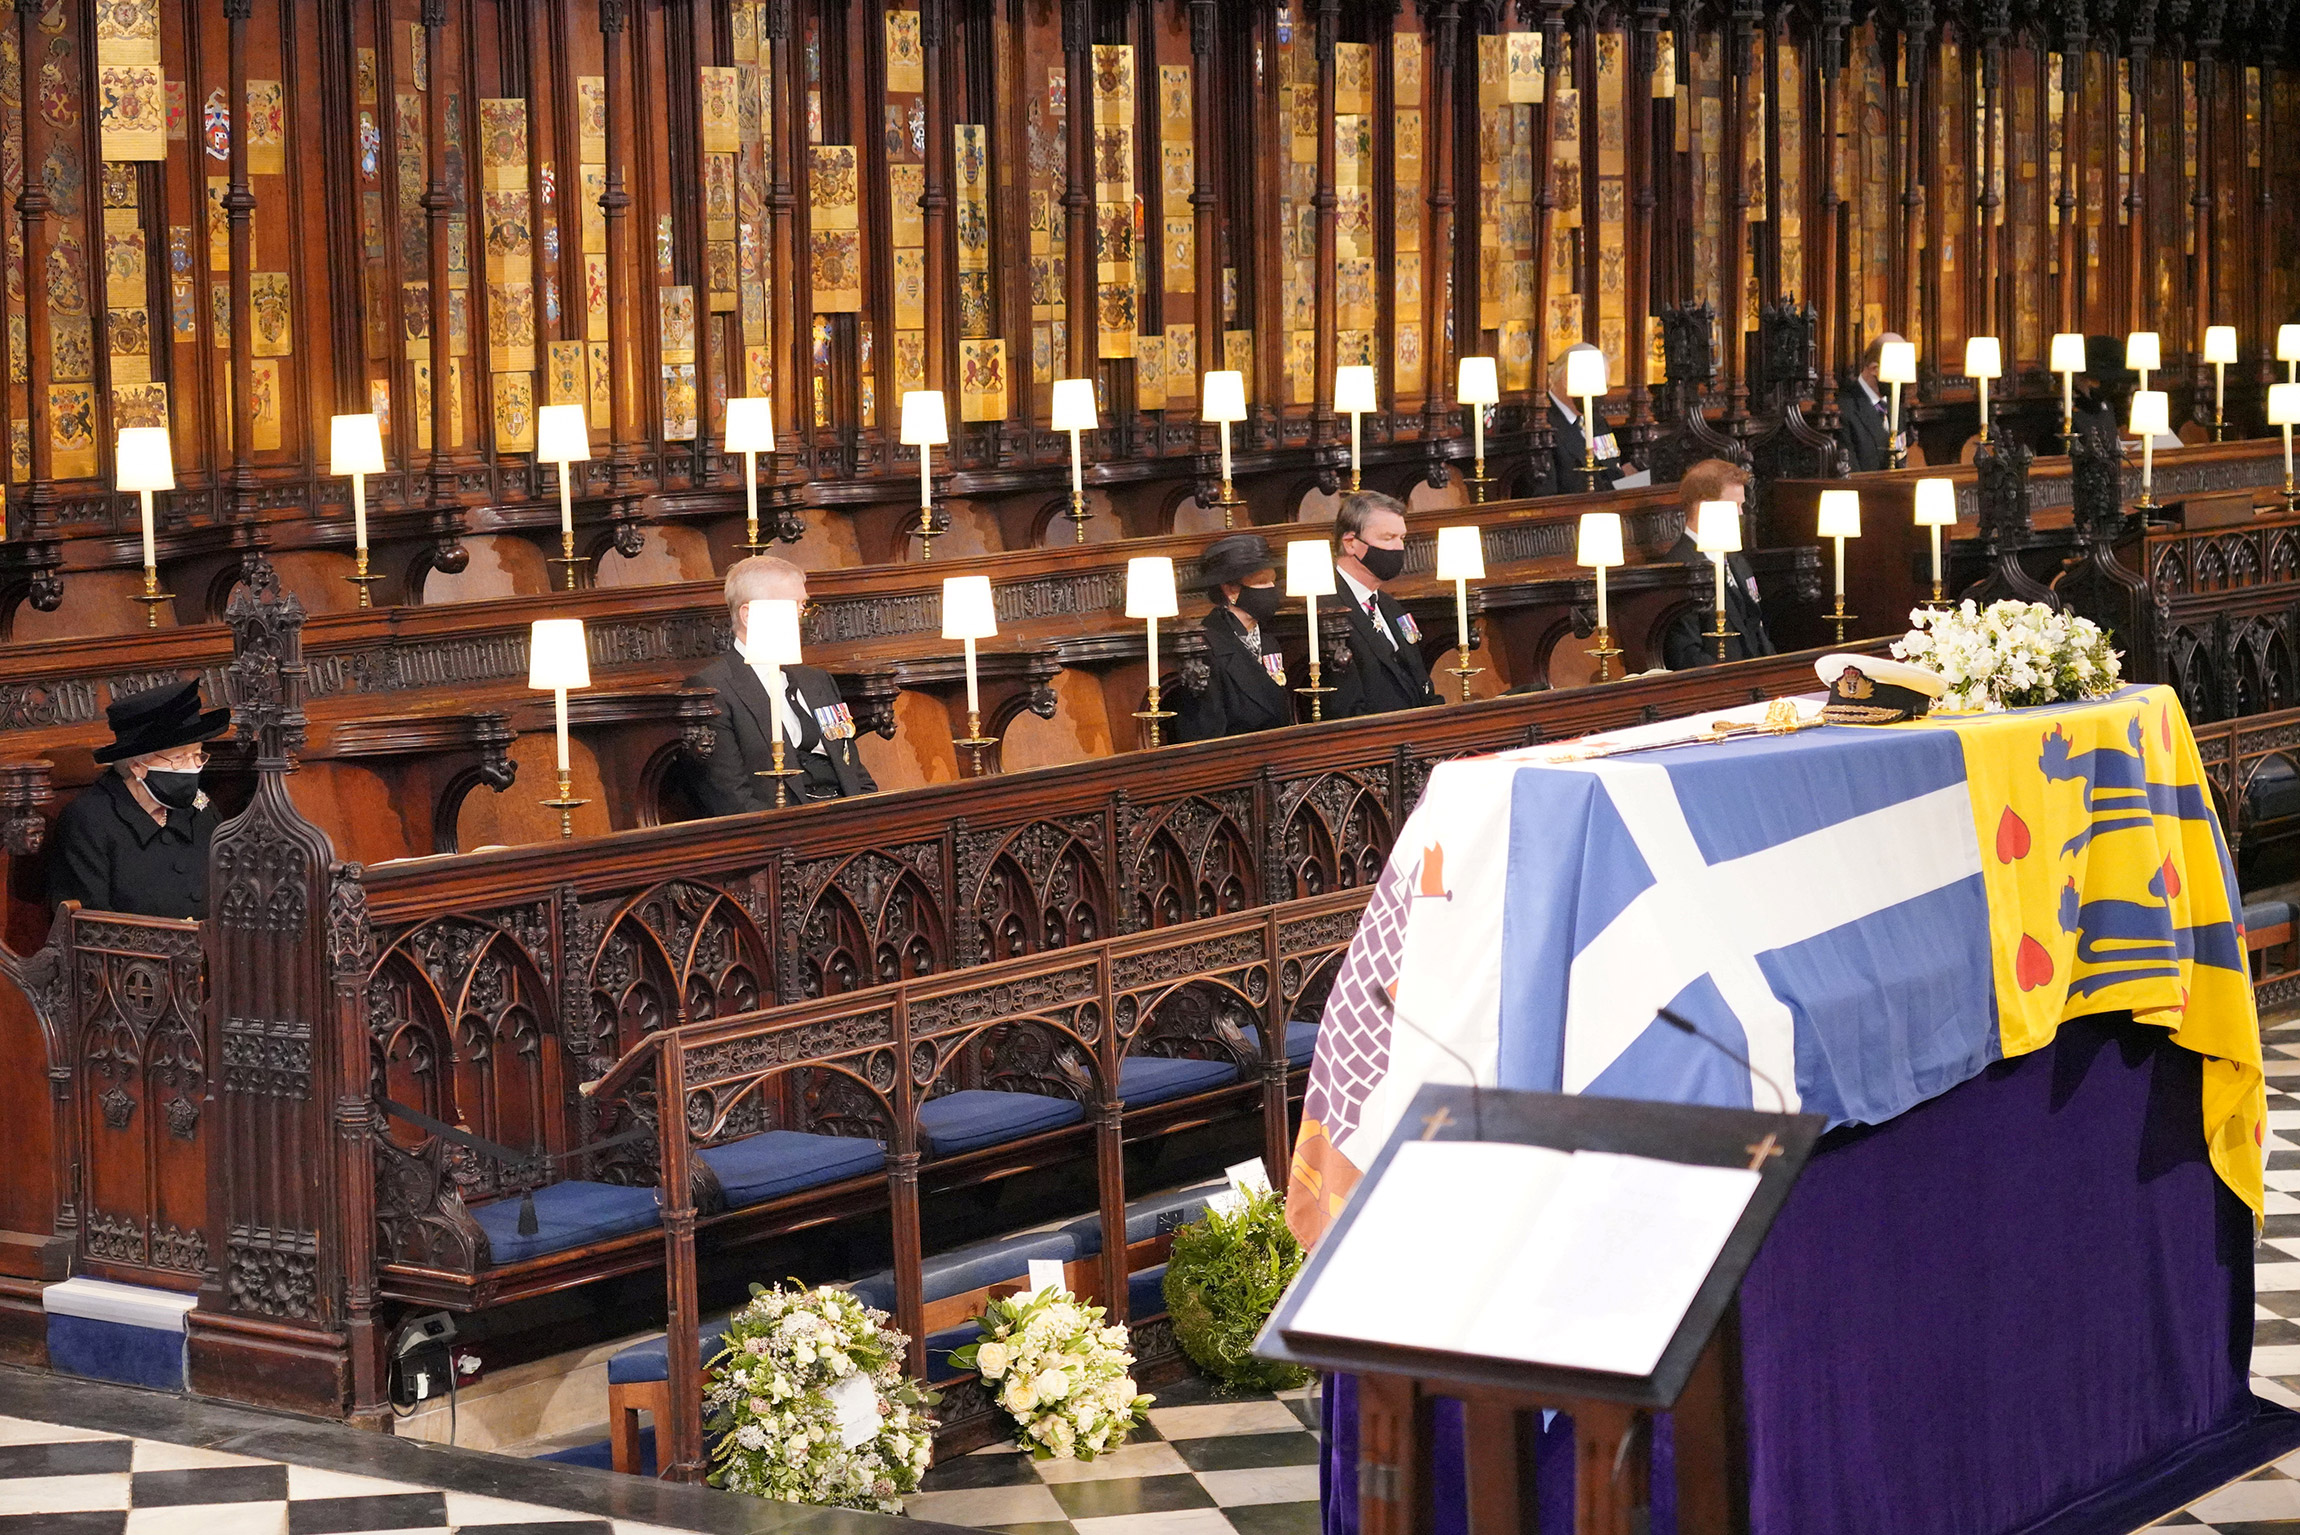 Королева Елизавета (слева) на траурной церемонии в день похорон ее супруга принца Филиппа в часовне Святого Георгия при Виндзорском замке, 17 апреля 2021 года.

Герцог Эдинбургский умер 9 апреля 2021 года в возрасте 99 лет. По воле самого принца Филиппа и из-за пандемии число посетителей похорон было ограничено